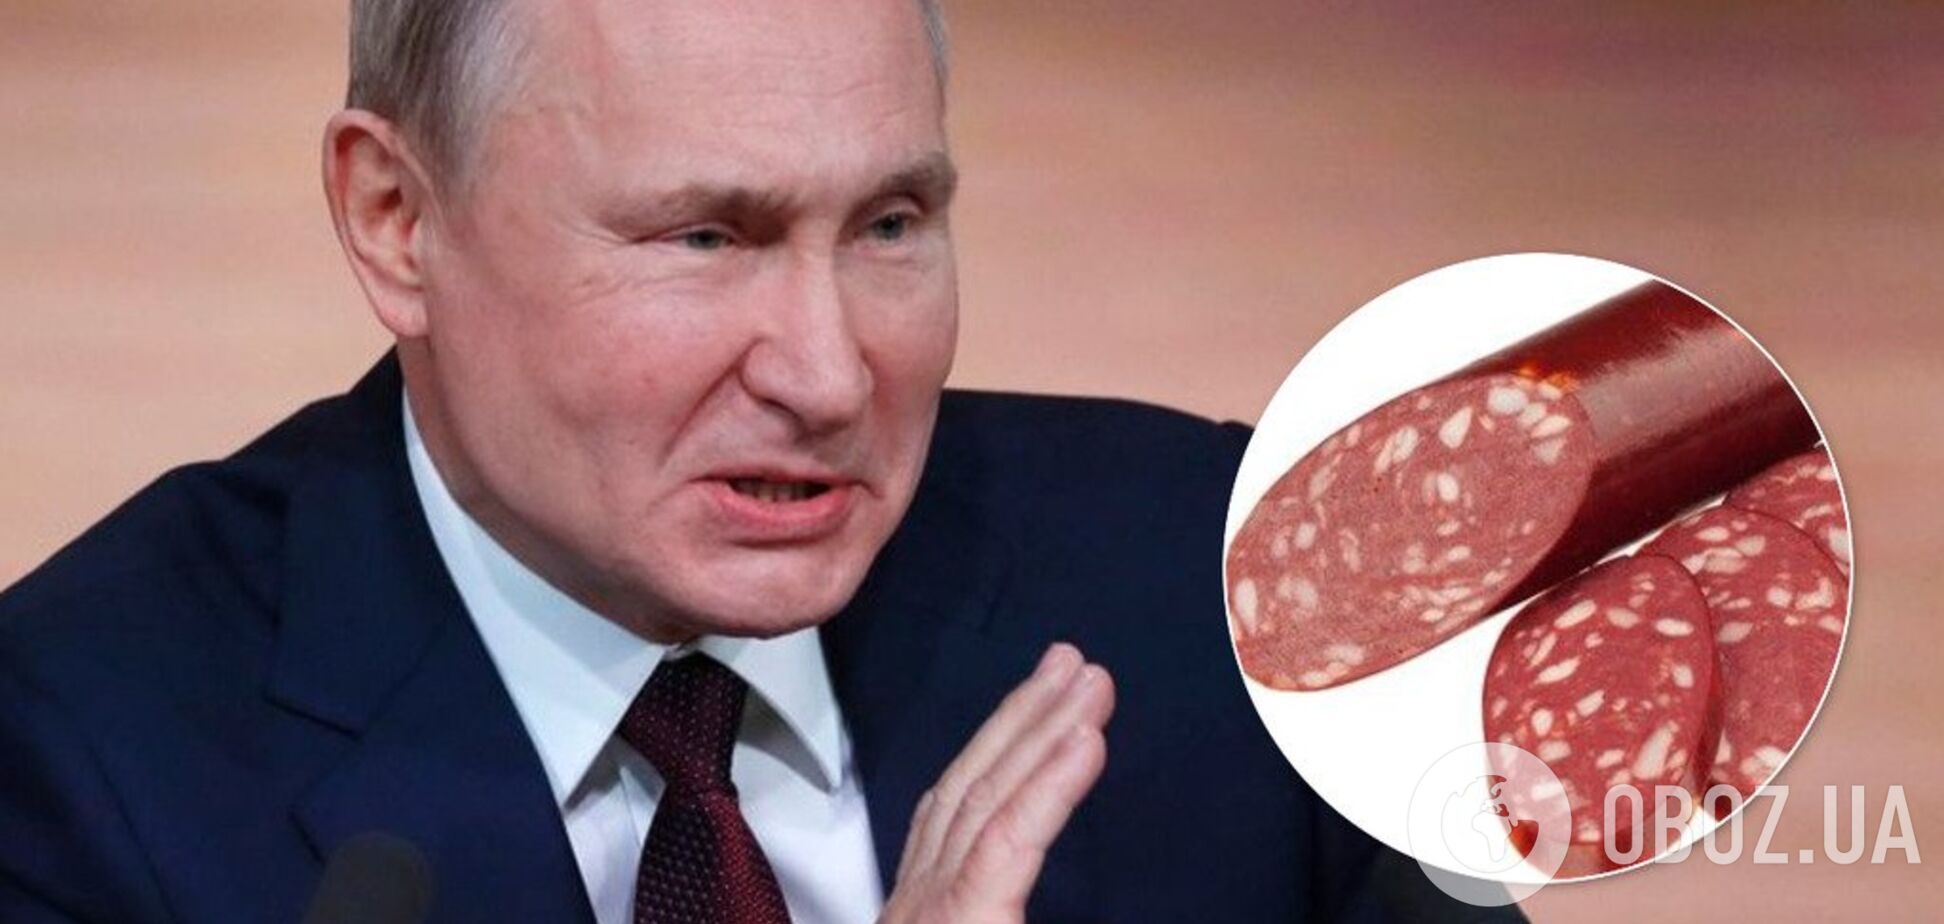 'Верни колбасу': Путин публично угодил в конфуз с чиновником. Видео